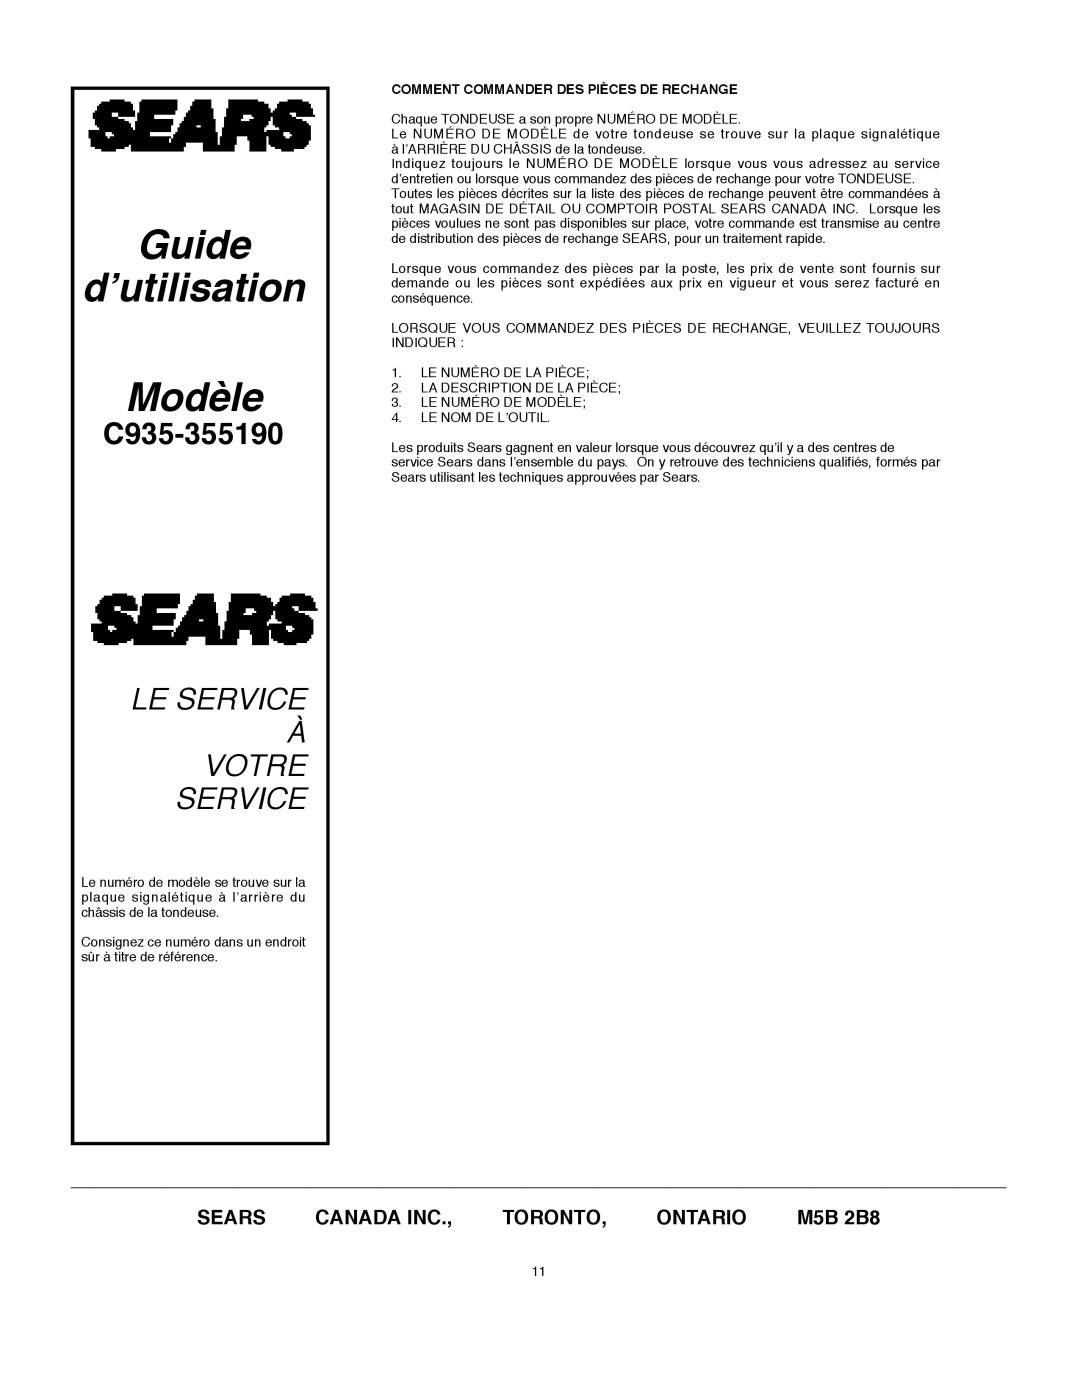 DeWalt C935-355190 M5B 2B8, Guide d’utilisation Modèle, Le Service À Votre Service, Sears, Canada Inc, Toronto, Ontario 